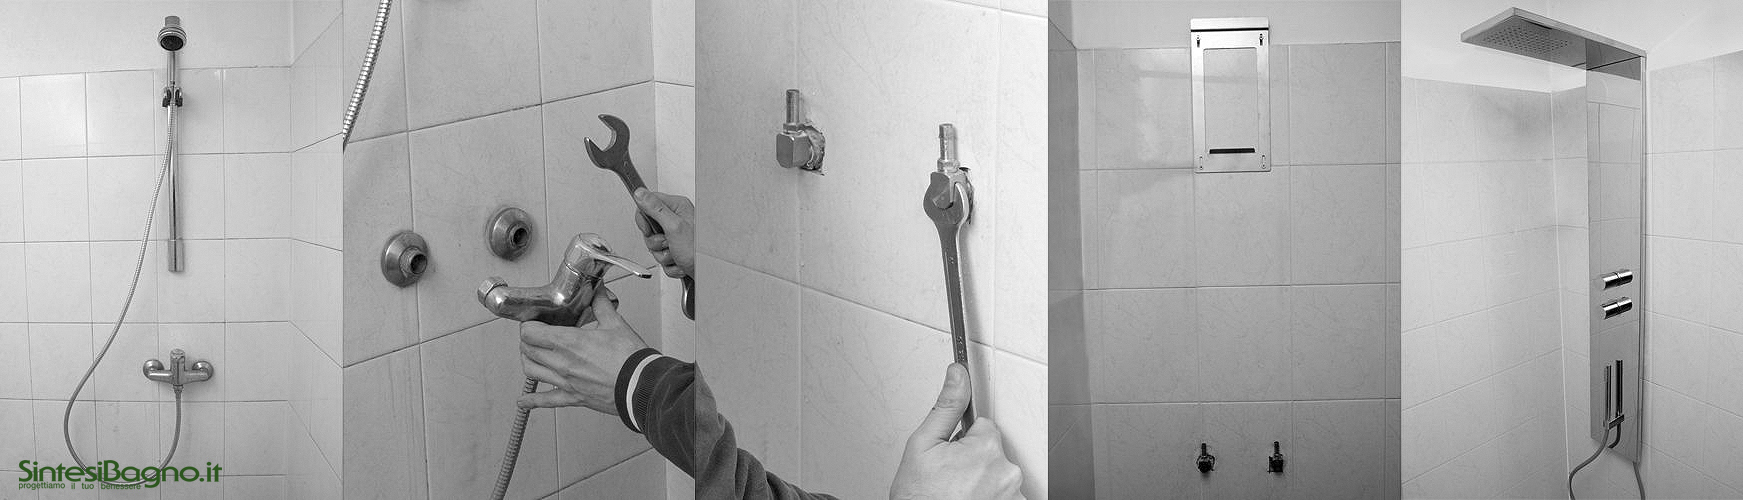 Sostituire l'impianto doccia senza intervento idraulico e di muratura